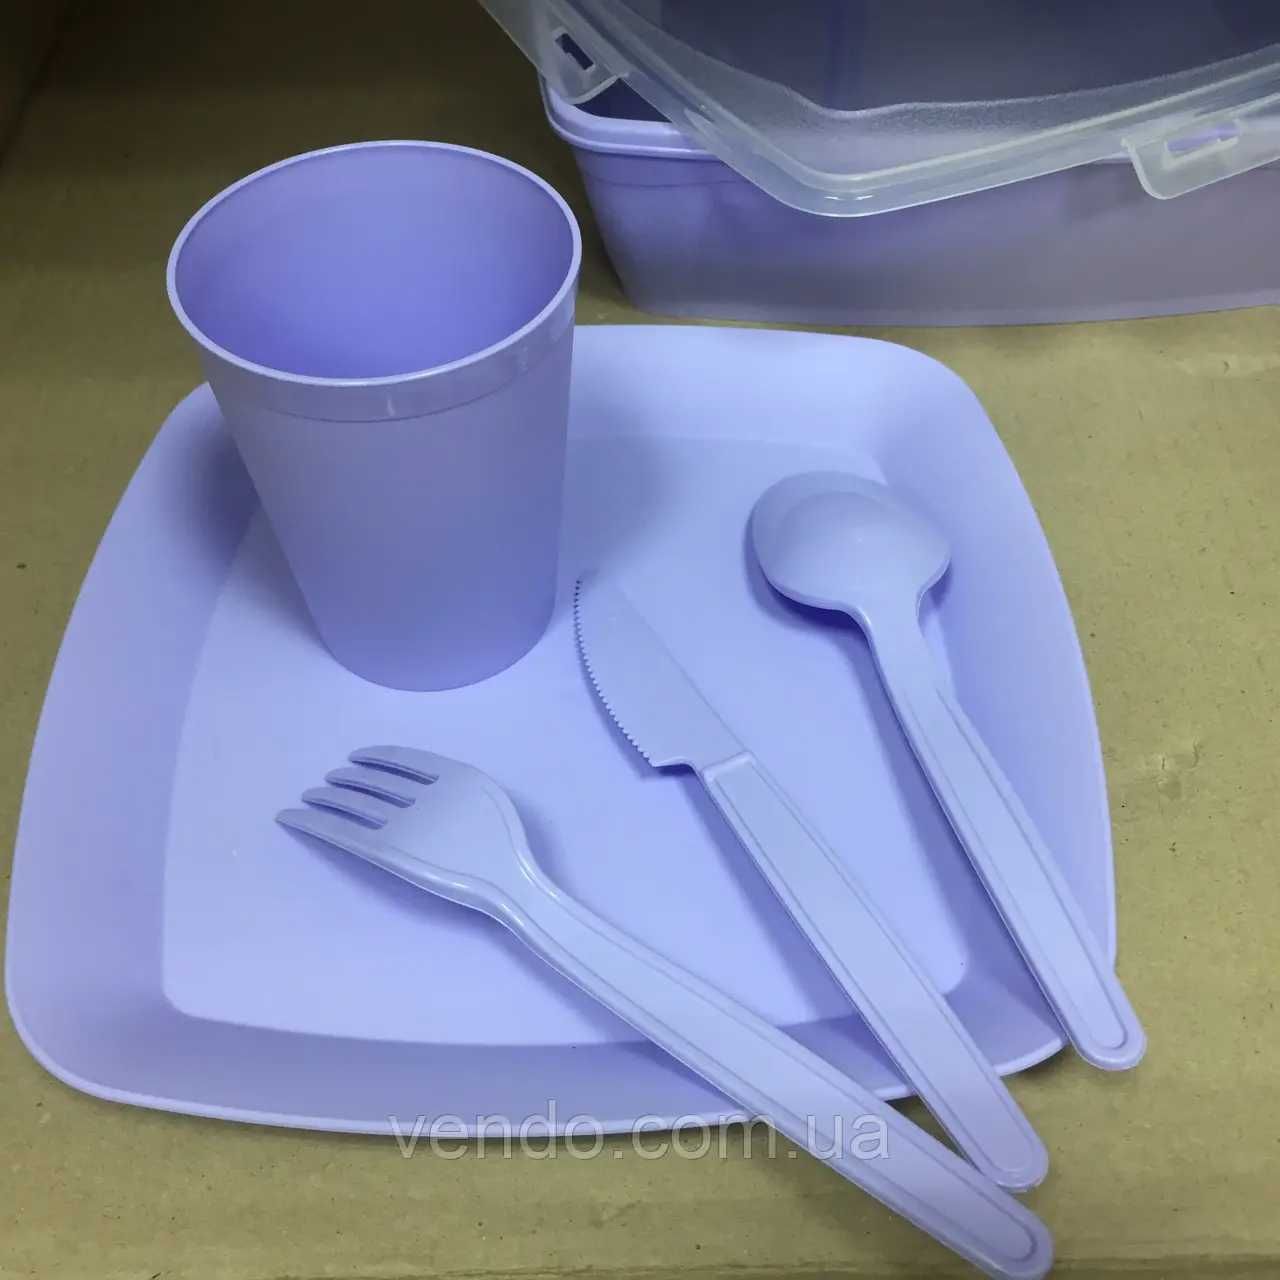 Набор посуды для пикника 32 предмета на 6 персон Турция